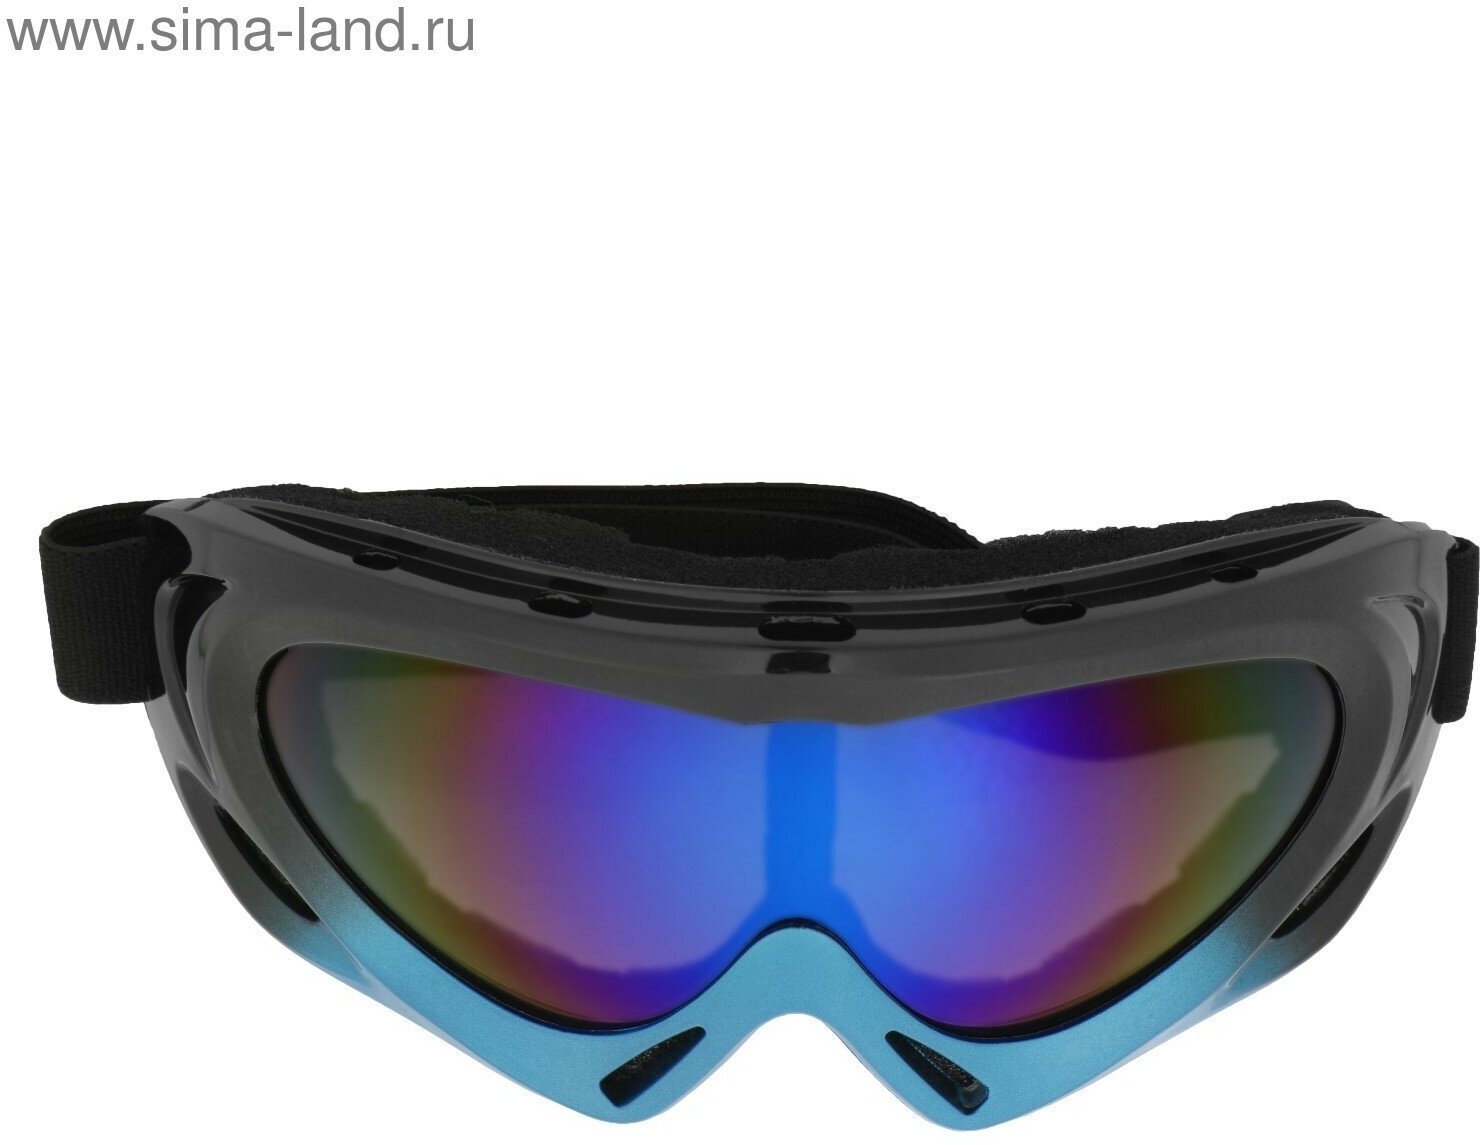 Очки для езды на мототехнике с доп. вентиляцией стекло хамелеон черно-синие